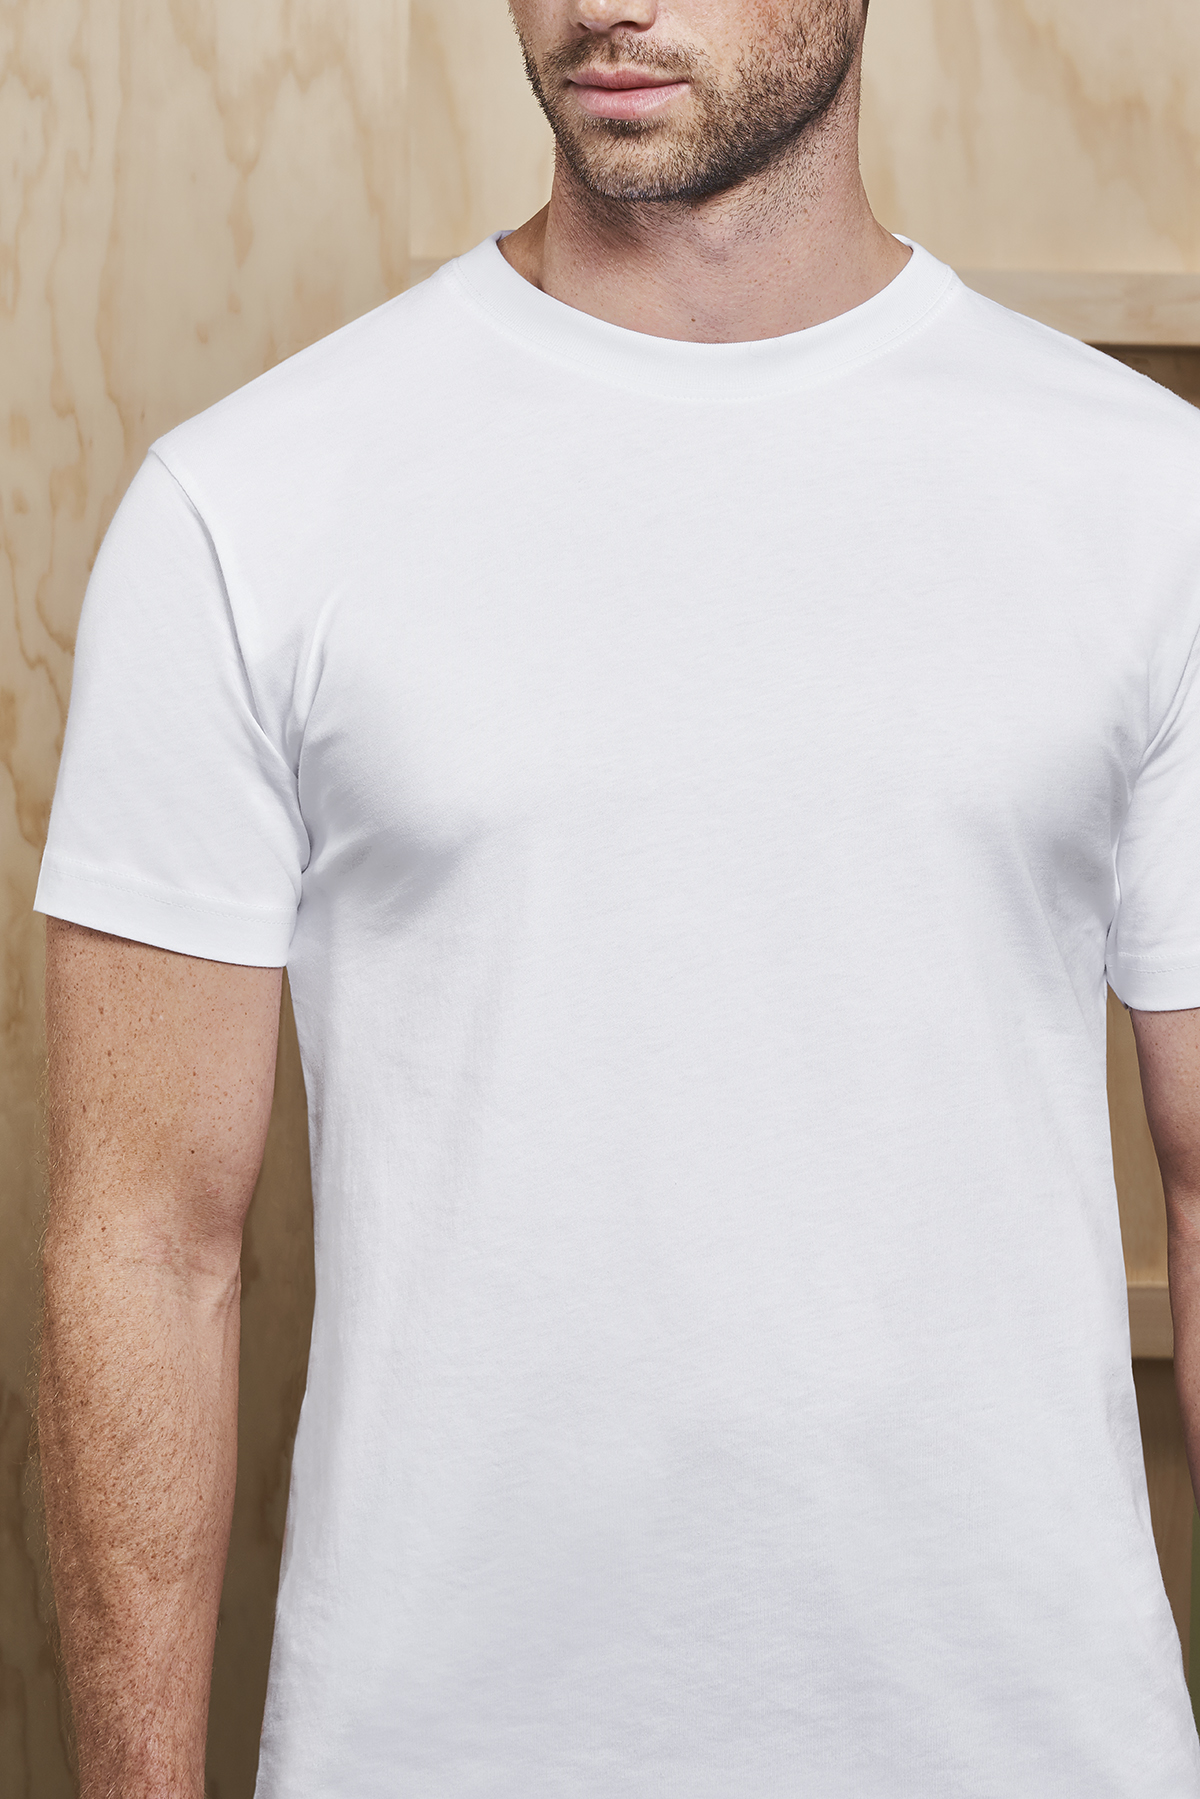 strømper Hilse mærkning ID 0510 T-TIME® T-shirt - Køb Online - Tekstil Tryk